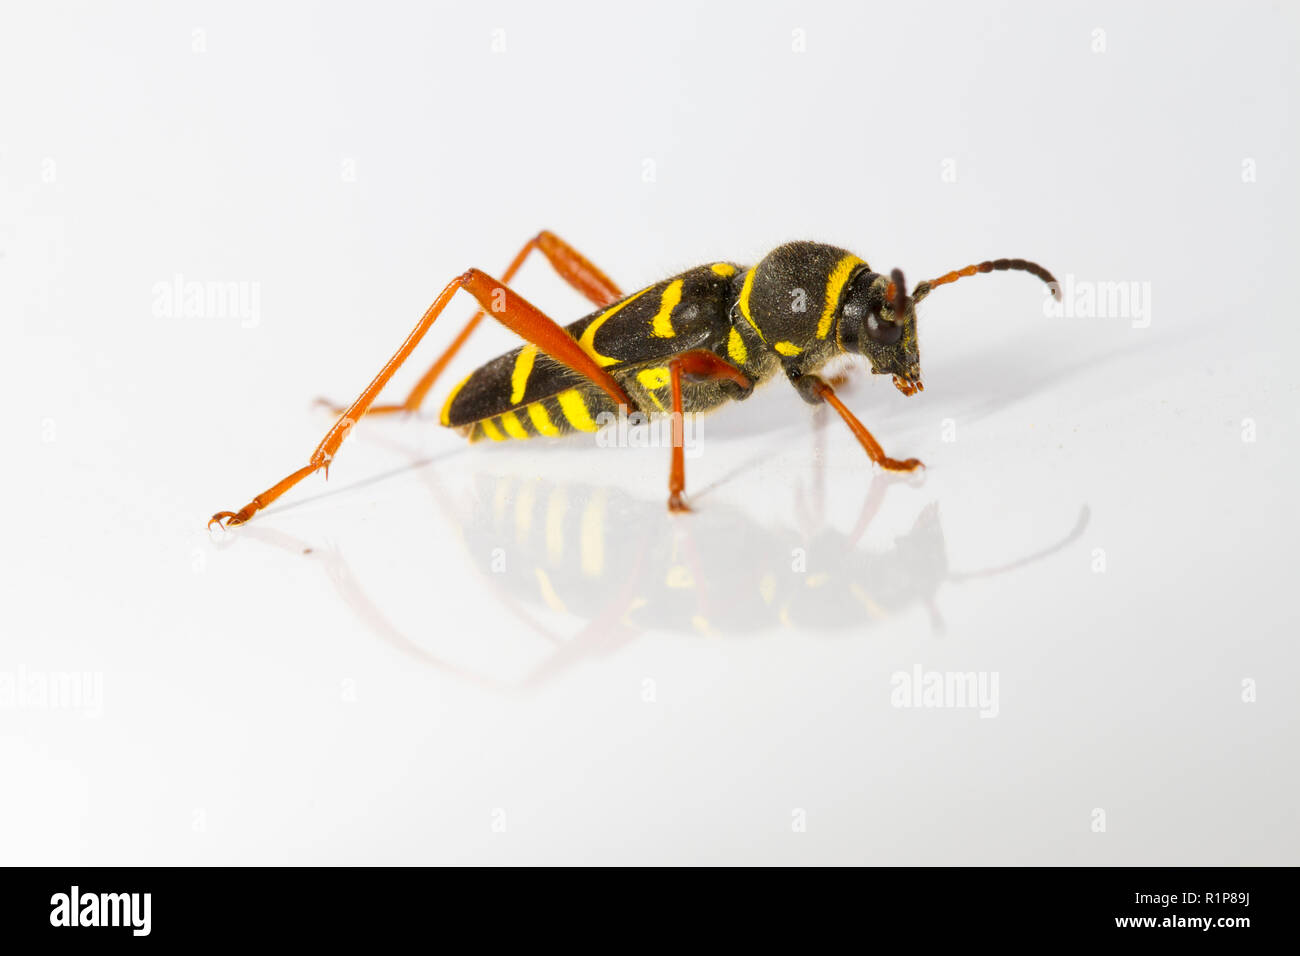 Wasp Käfer (Clytus arietis) Erwachsenen, live Insekt auf weißem Hintergrund fotografiert. Powys, Wales. Juni. Stockfoto